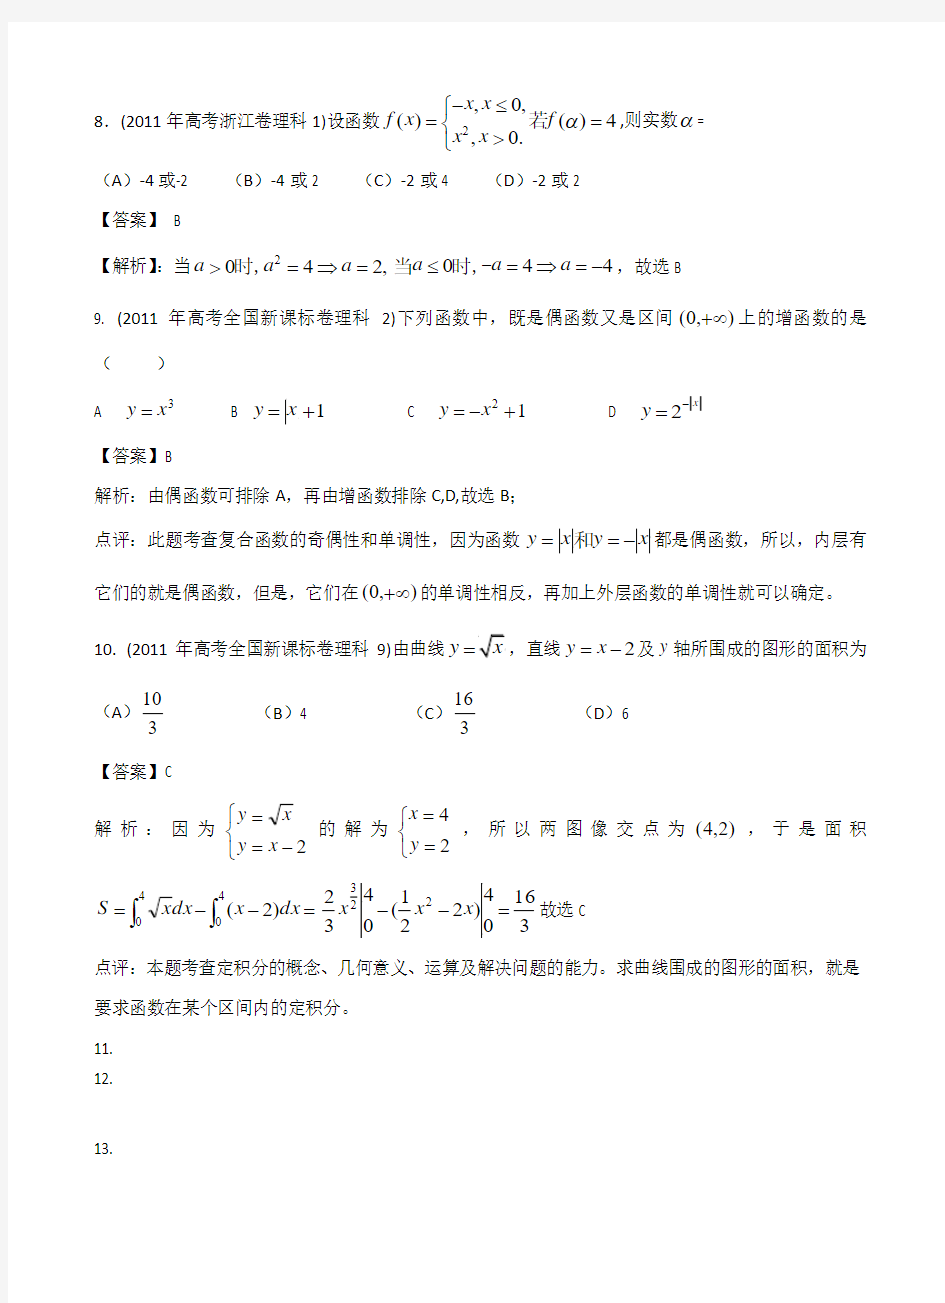 2011年高考试题分类汇编数学(理科)之专题_函数与导数(word解析版)